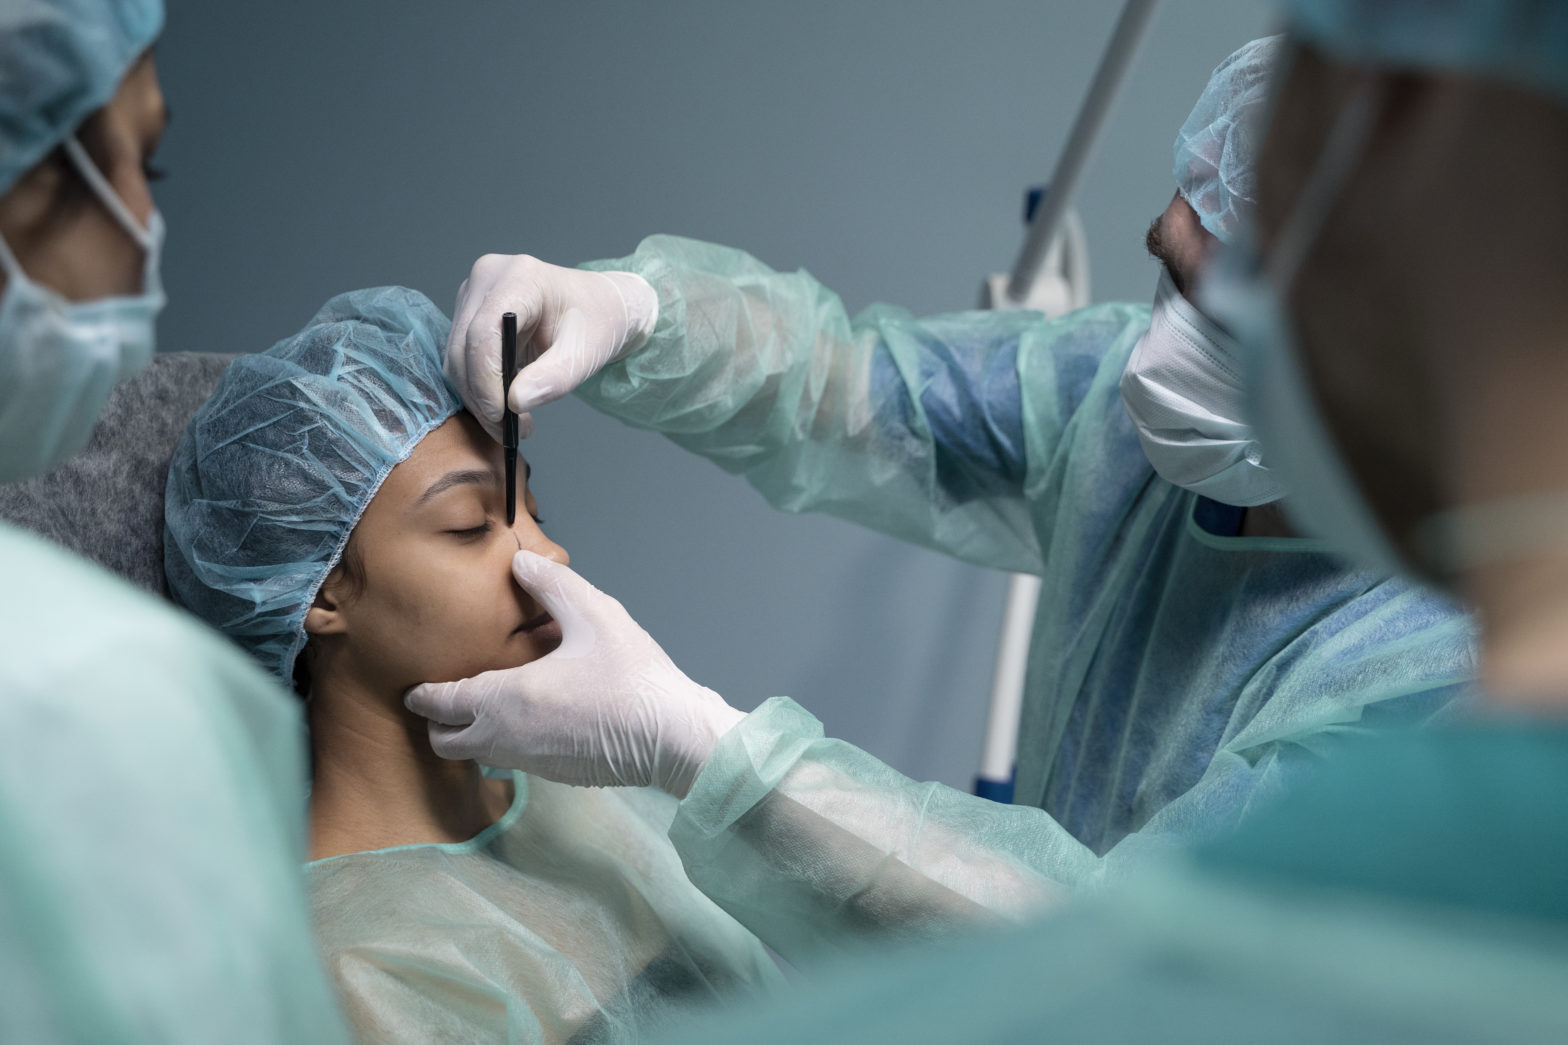 स्माइल आय सर्जरी म्हणजे काय? अधिक जाणून घेण्यासाठी आता वाचा – डॉ अग्रवाल